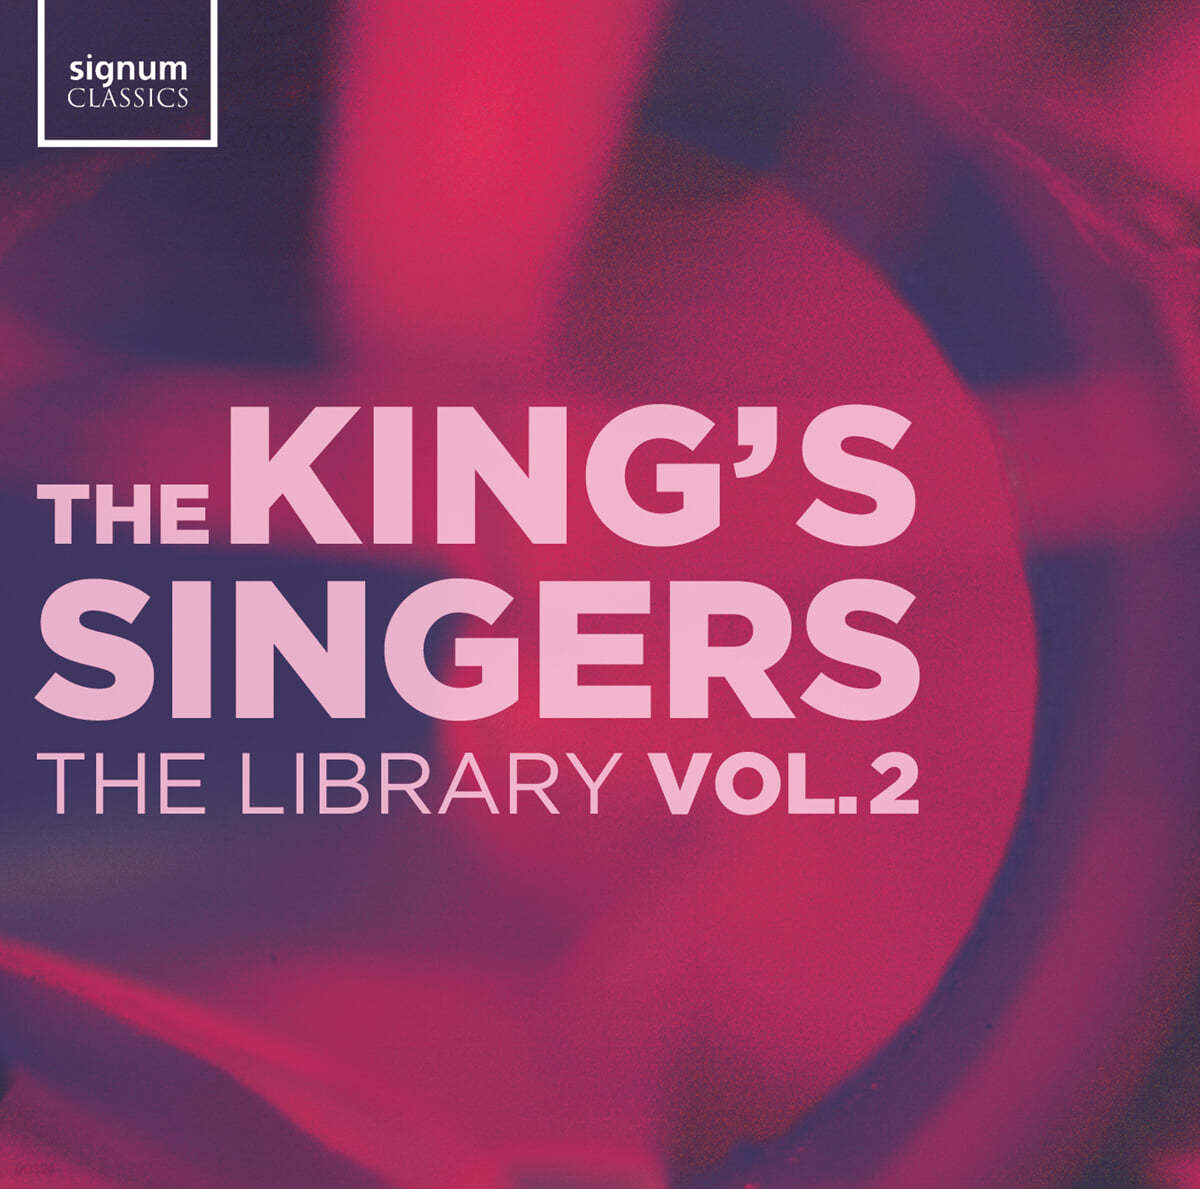 킹스 싱어즈 더 라이브러리 2집 (The King’s Singers - The Library Vol. 2)